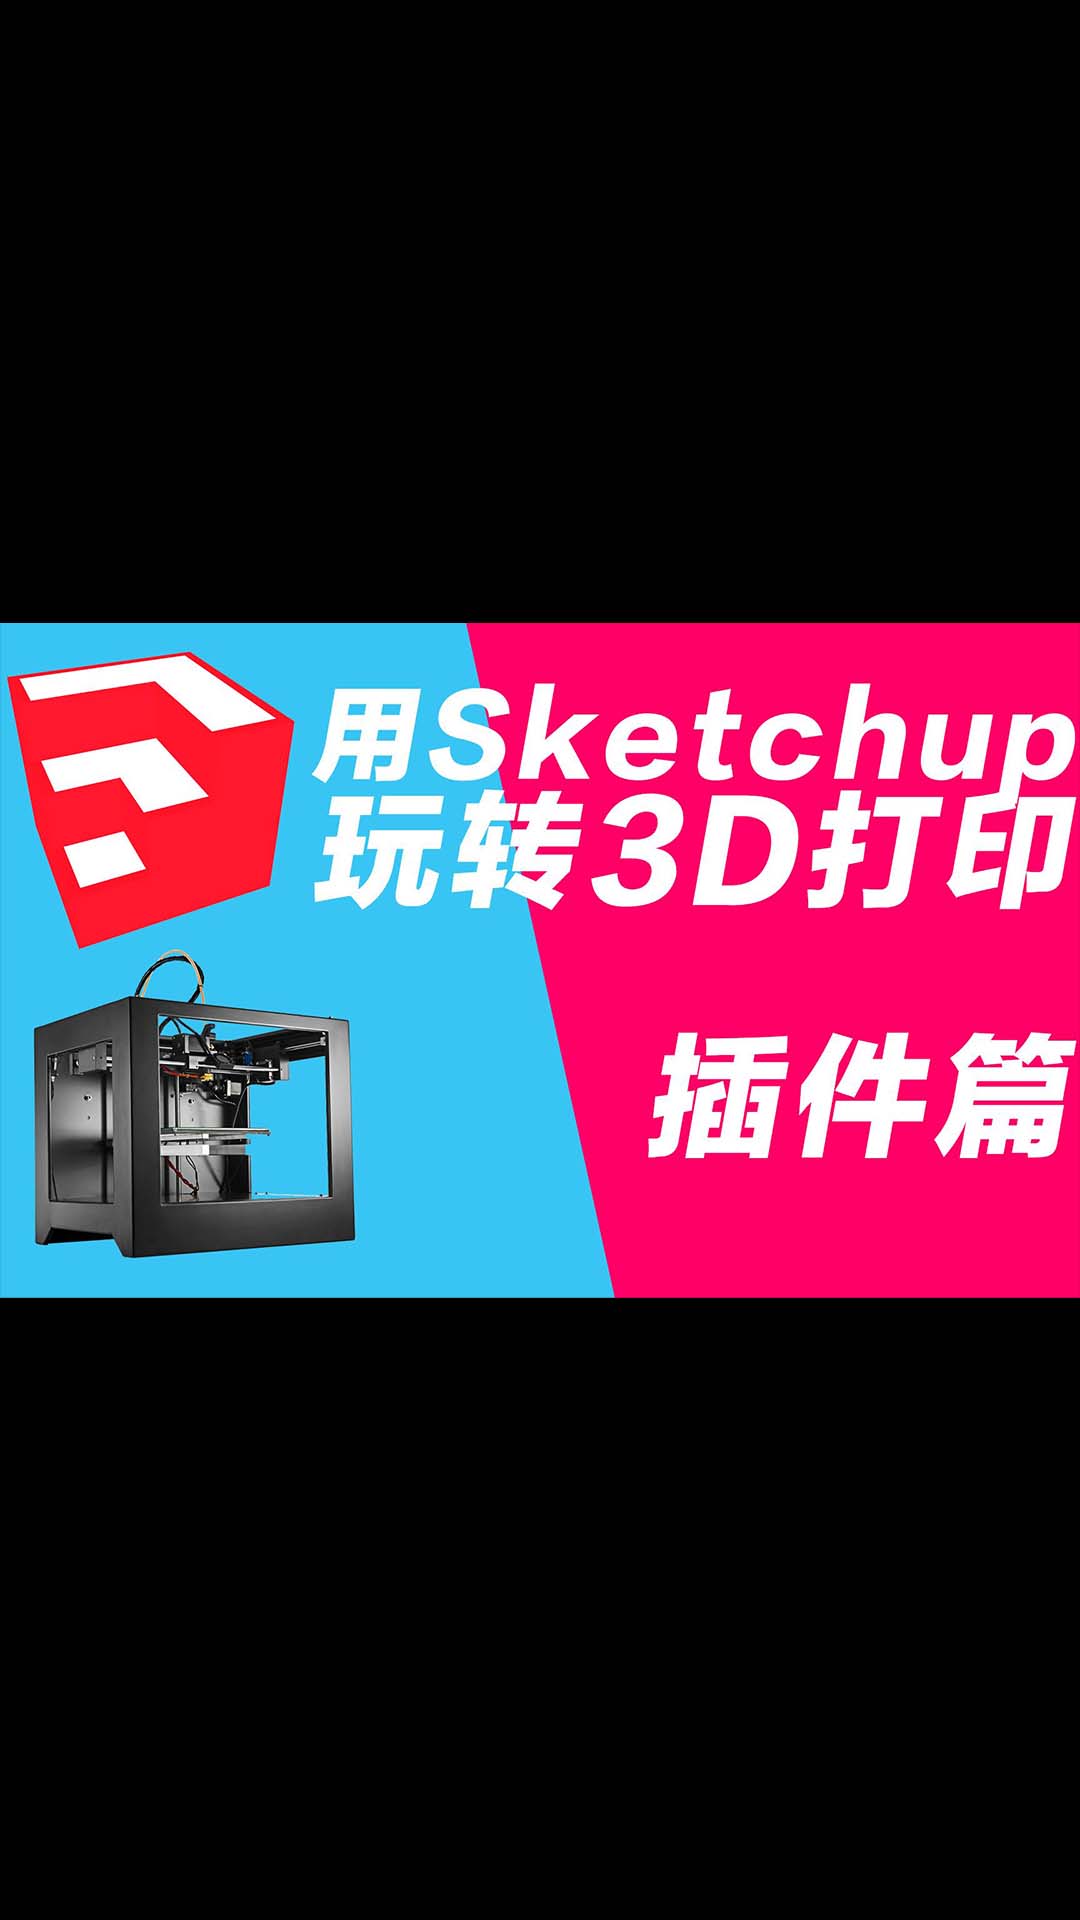 玩转3D打印机系列 用sketchup做3D打印建模 stl和solid inspector插件应用